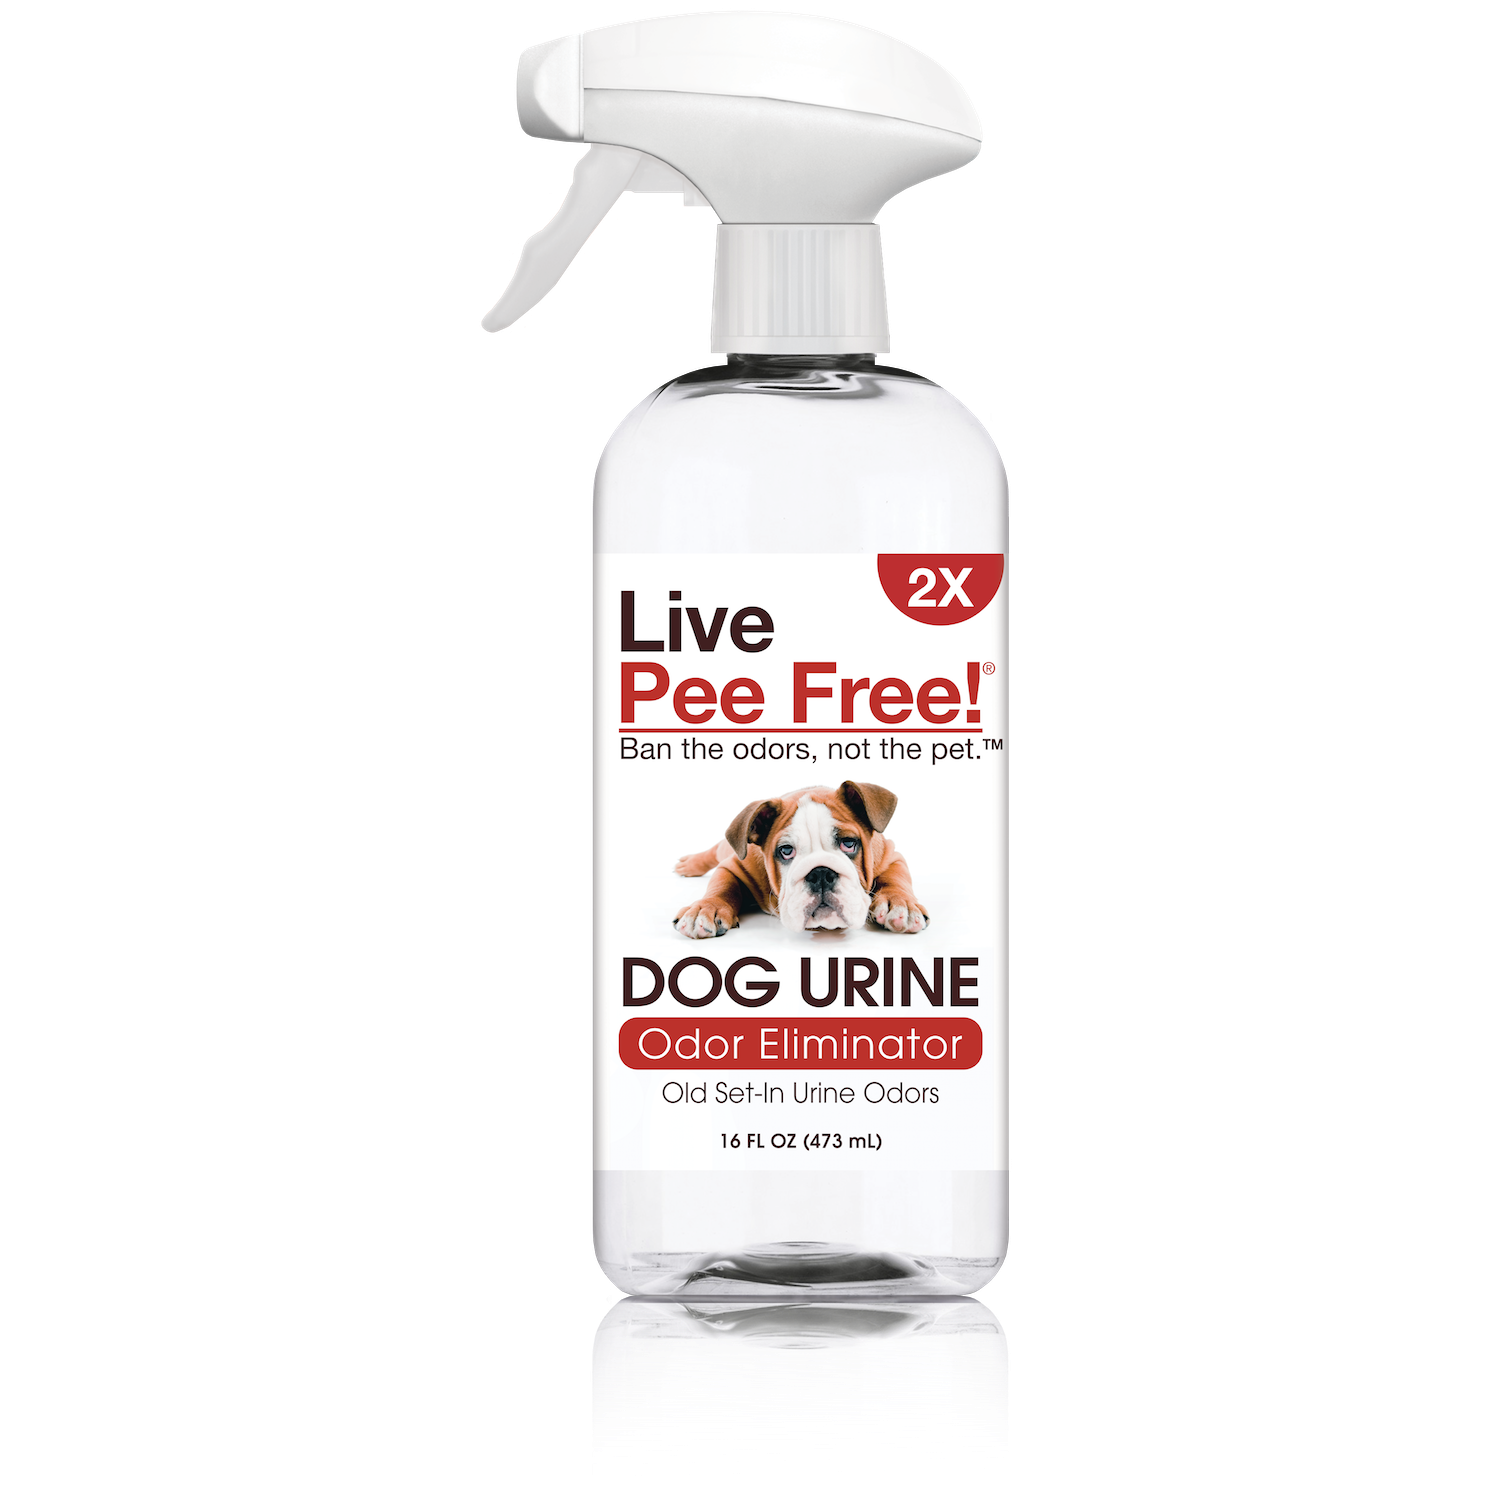 Live Odor Free!® Dog Urine 2X